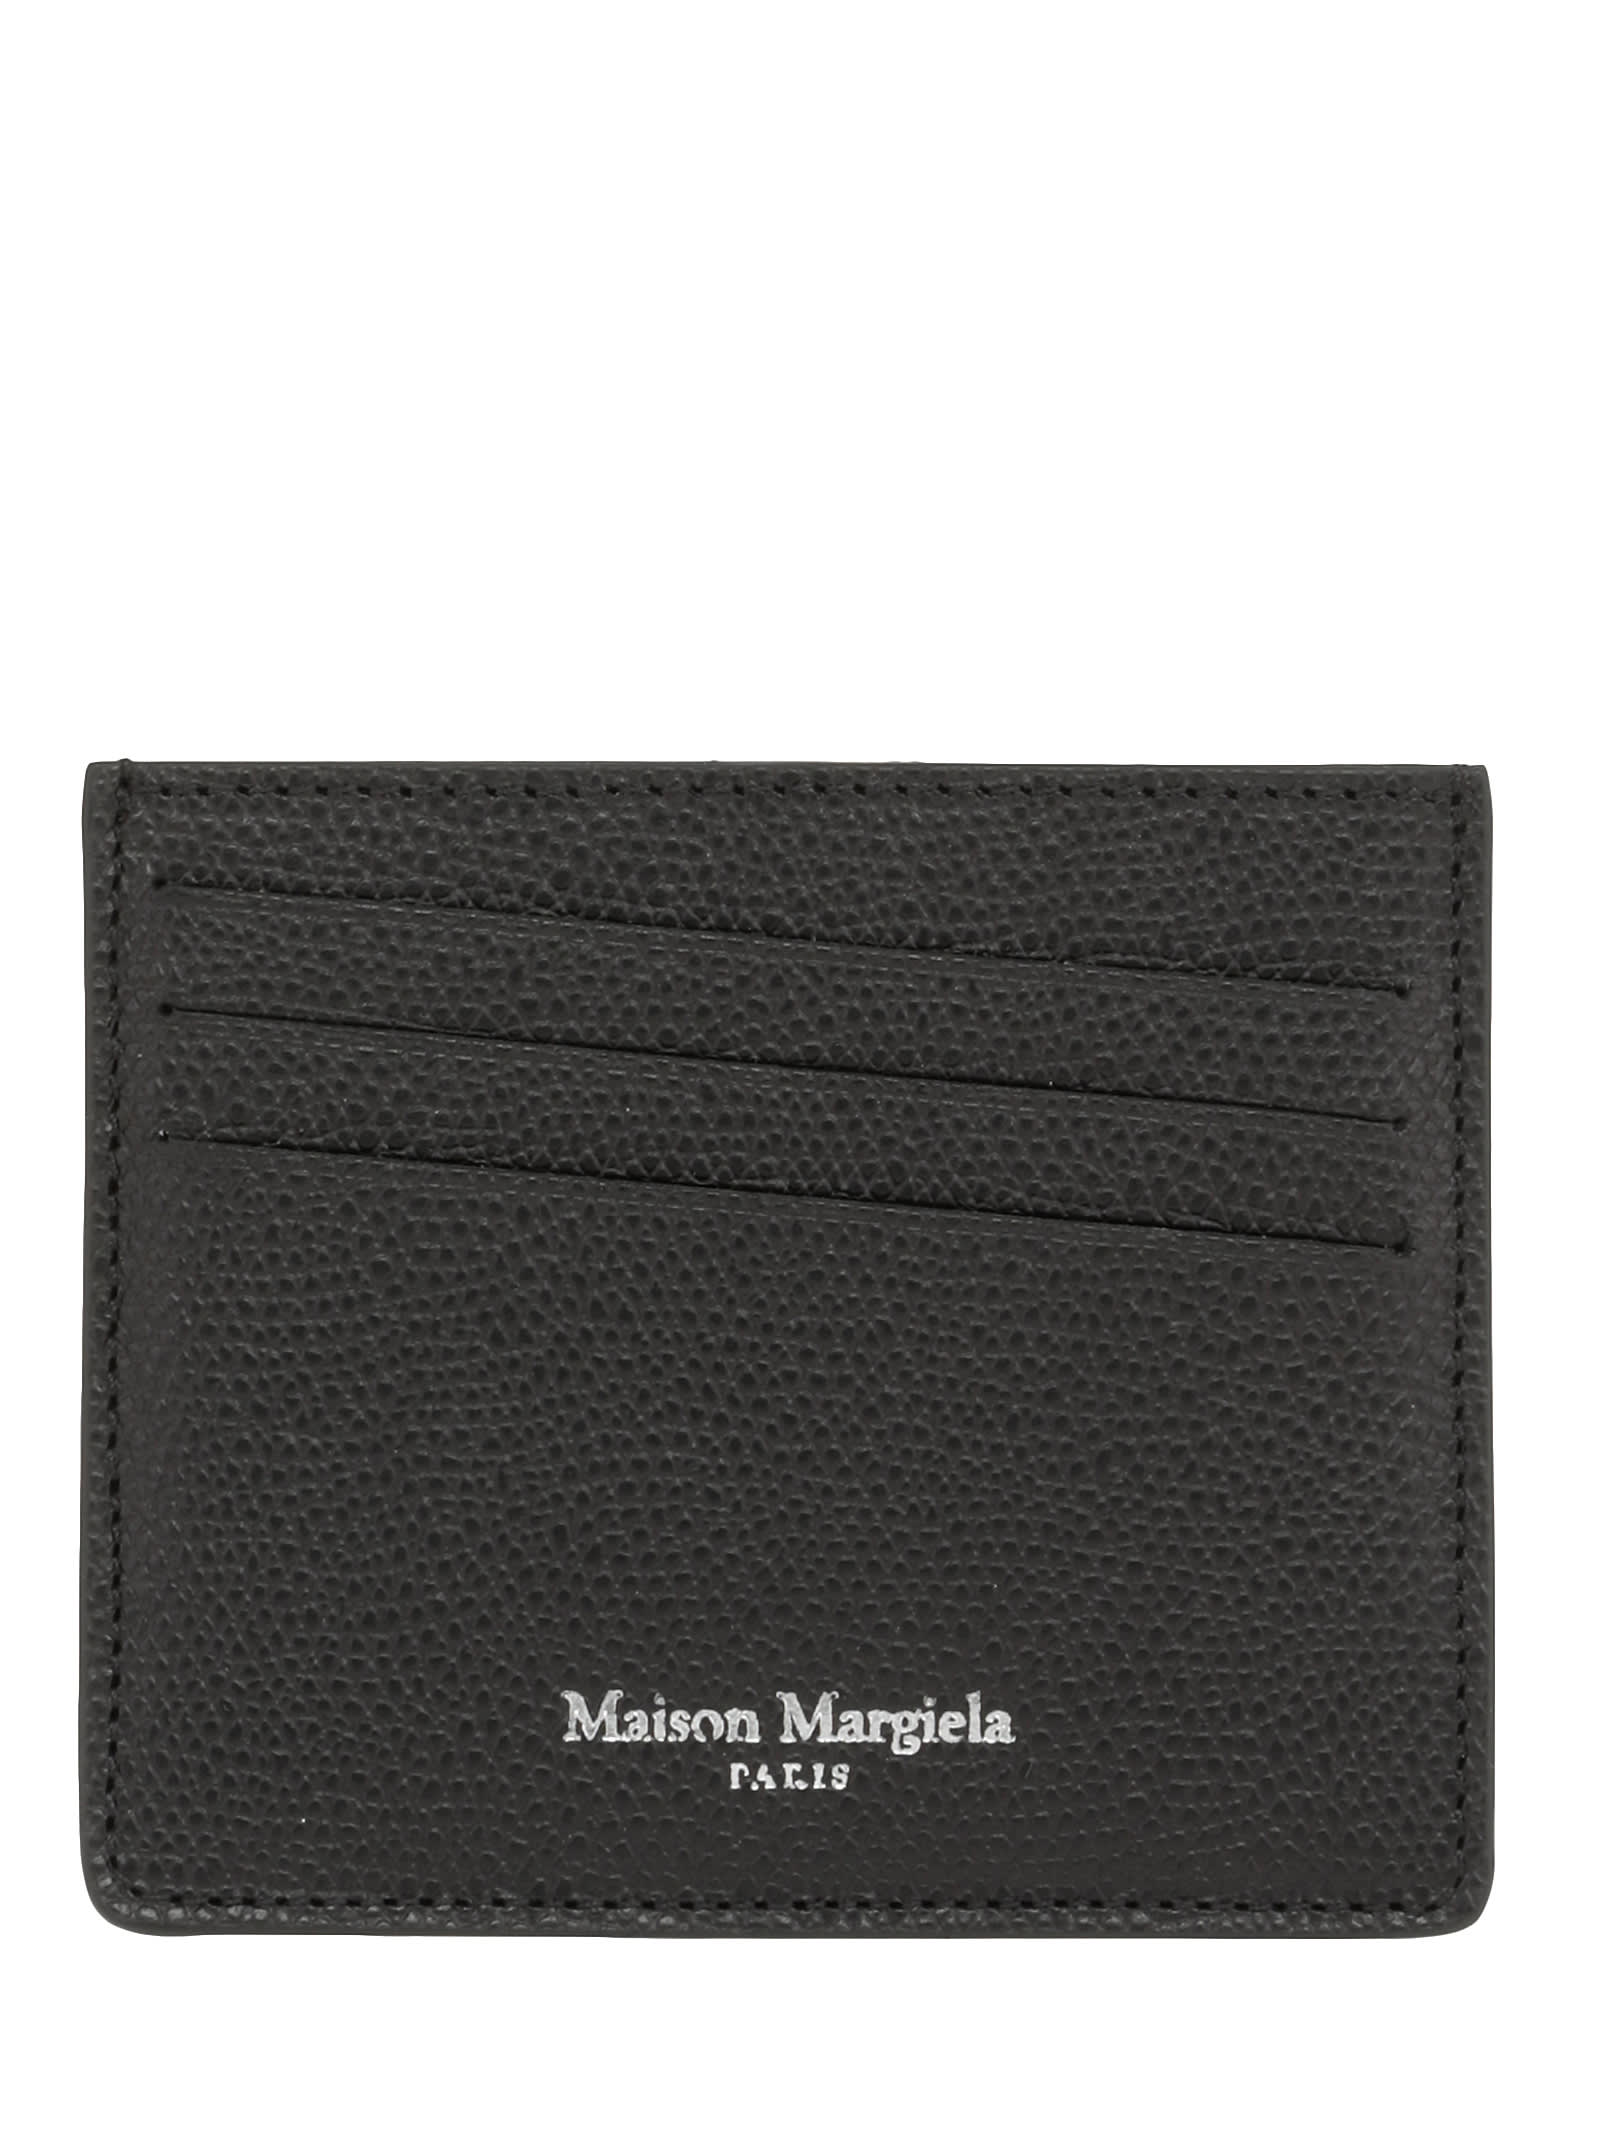 MAISON MARGIELA LEATHER CARD HOLDER,11270122